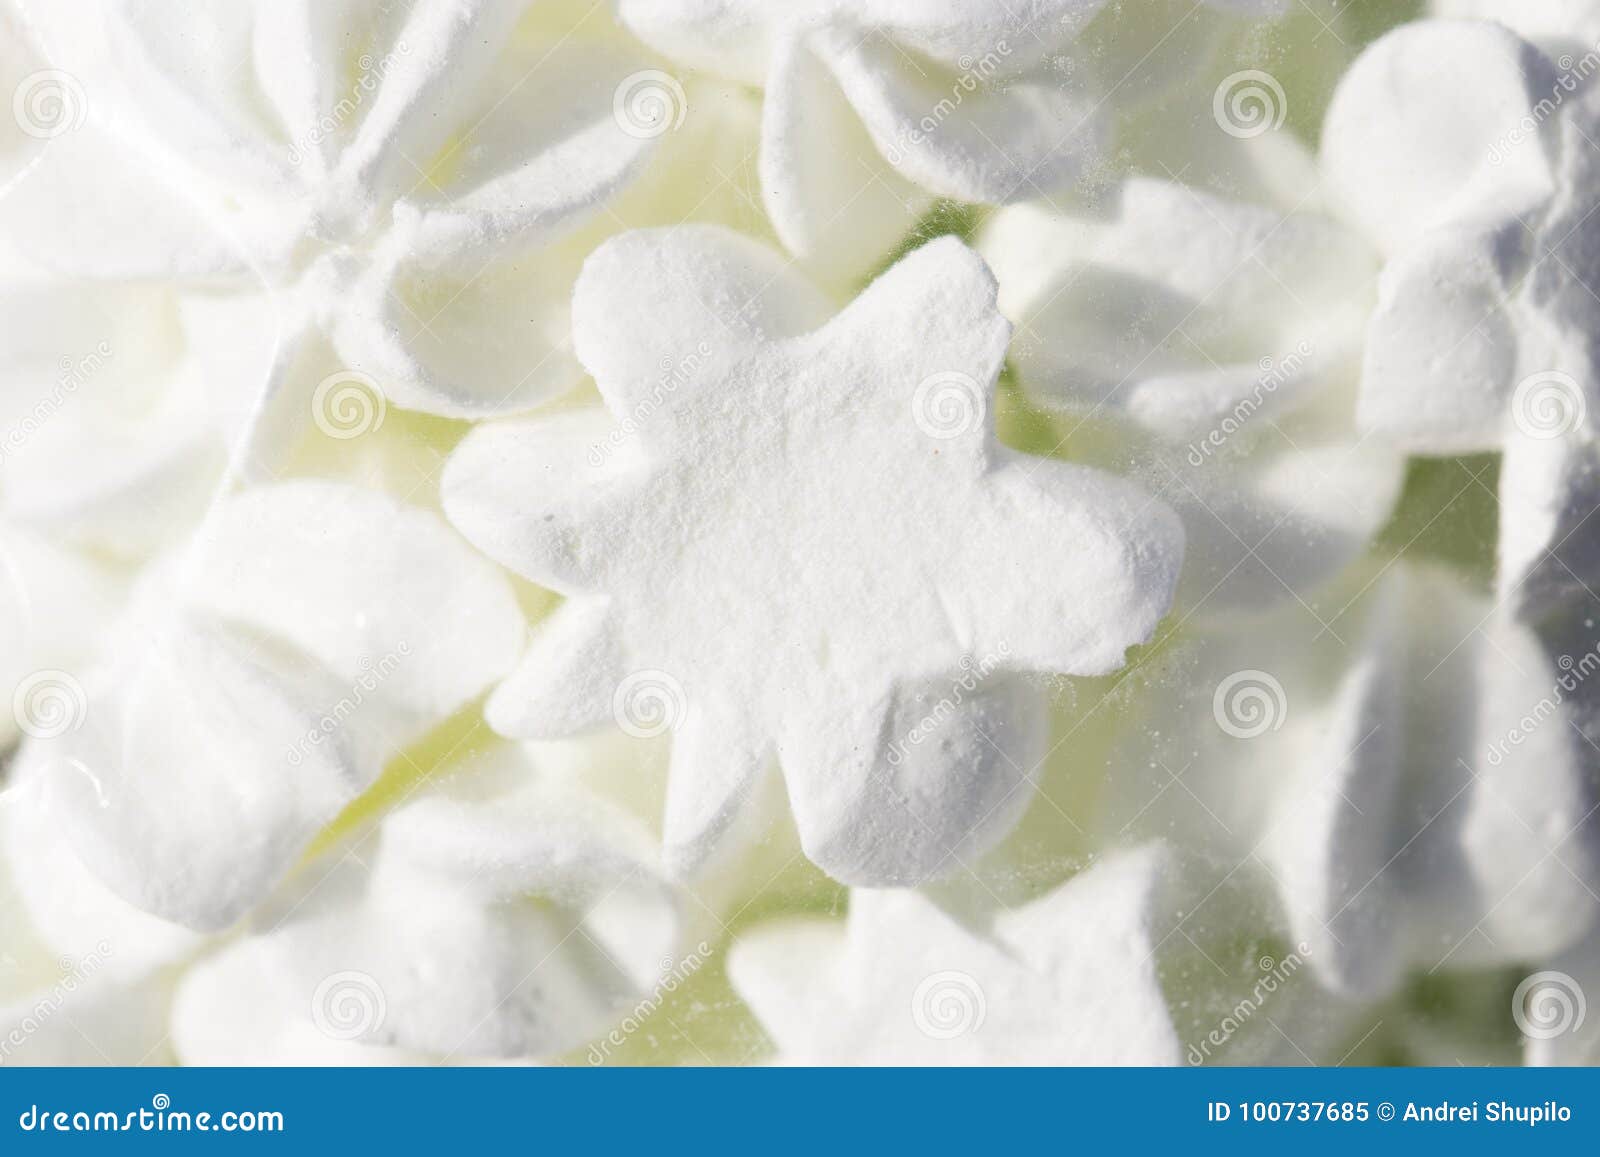 Мешок зефира. Белый зефир на белом фоне в белой вазочке фото.